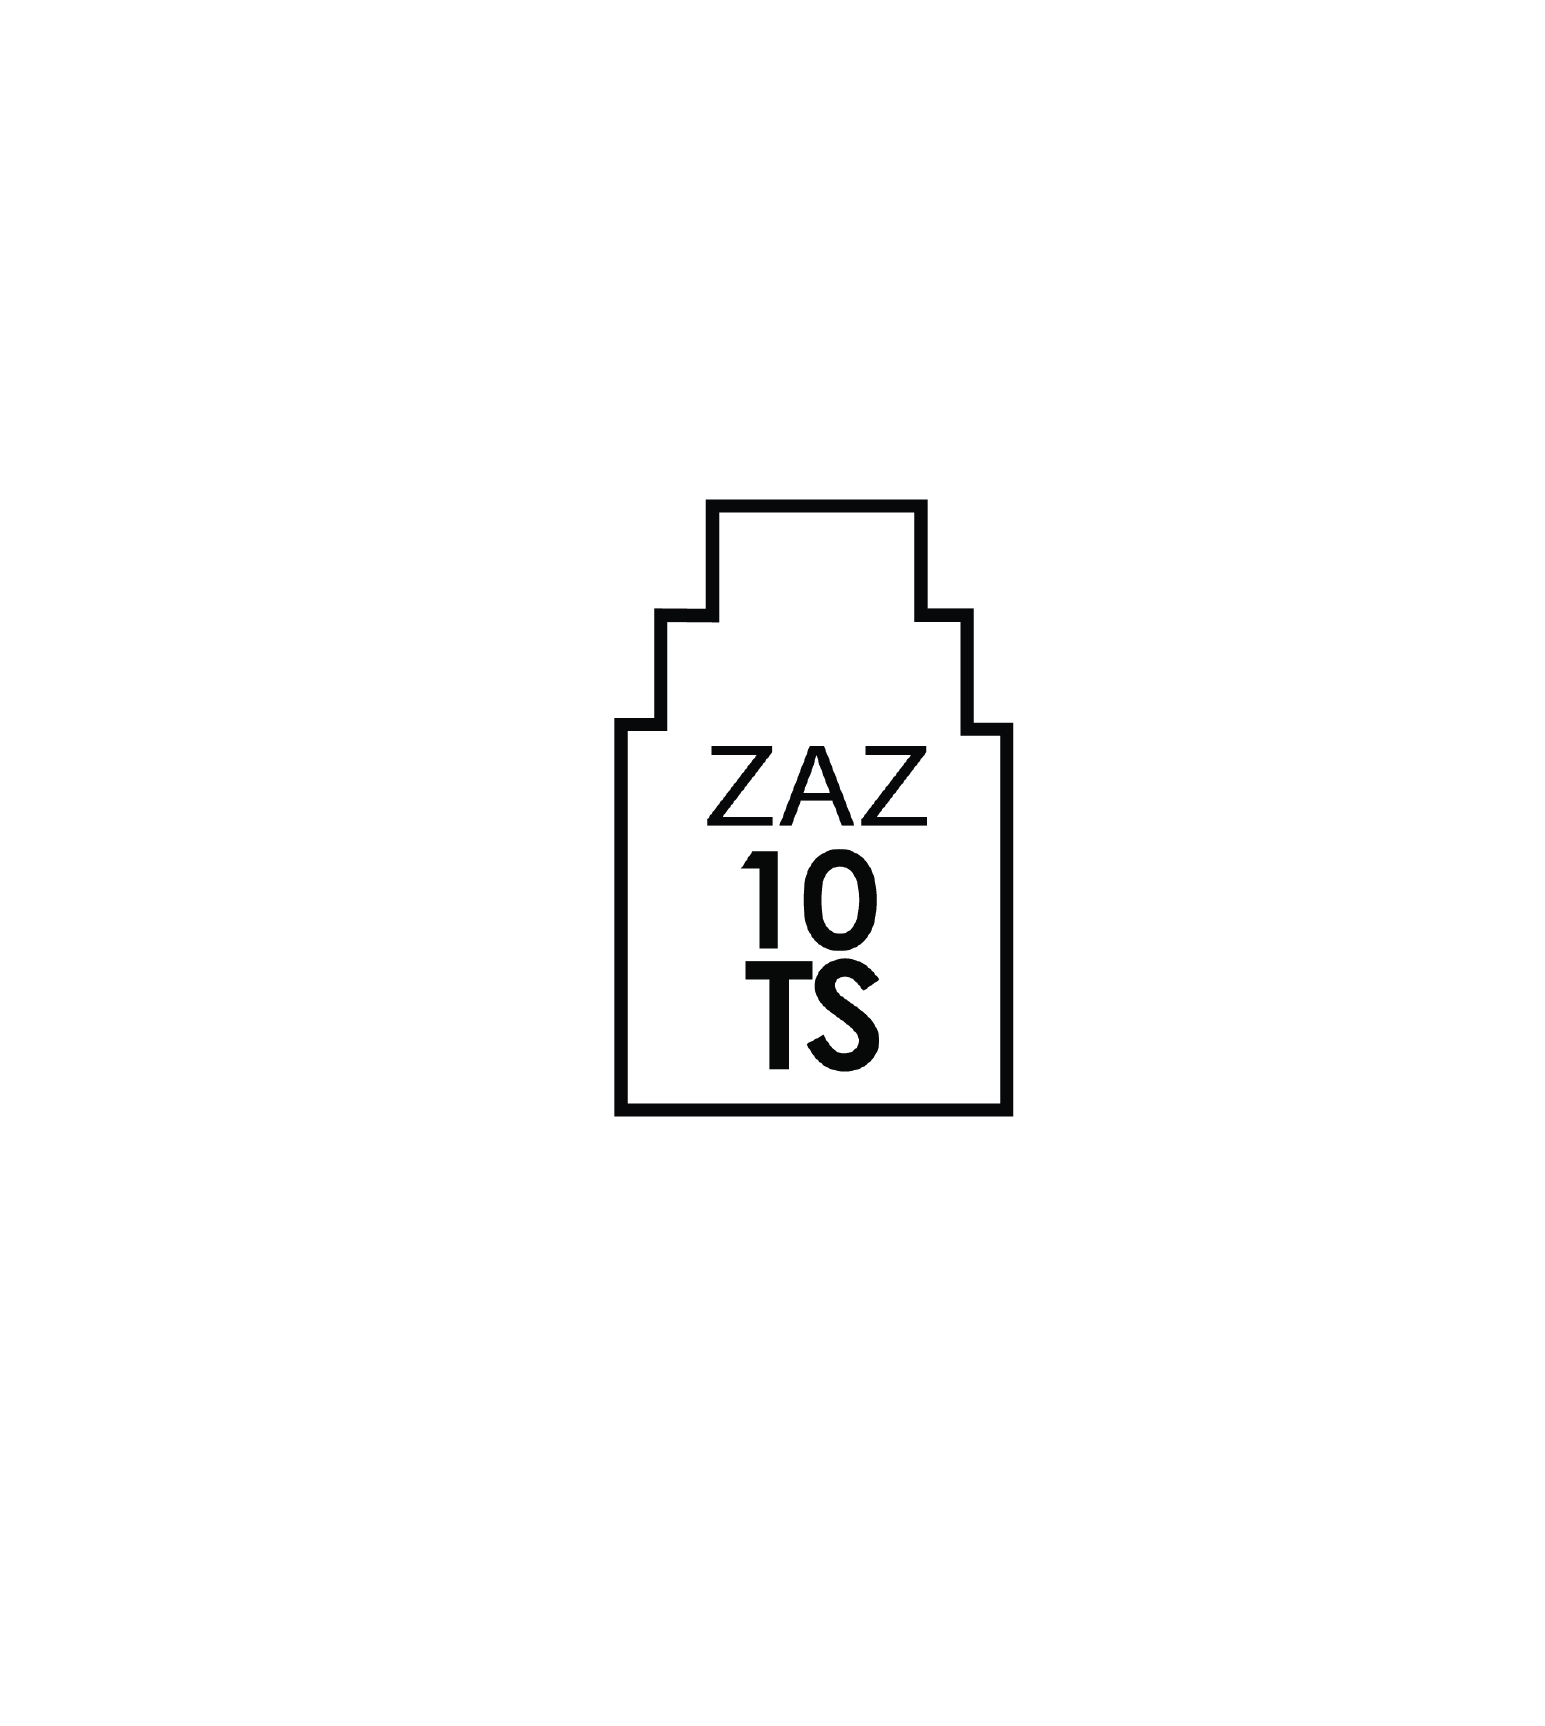 ZAZ10TS logo_V2-01.png